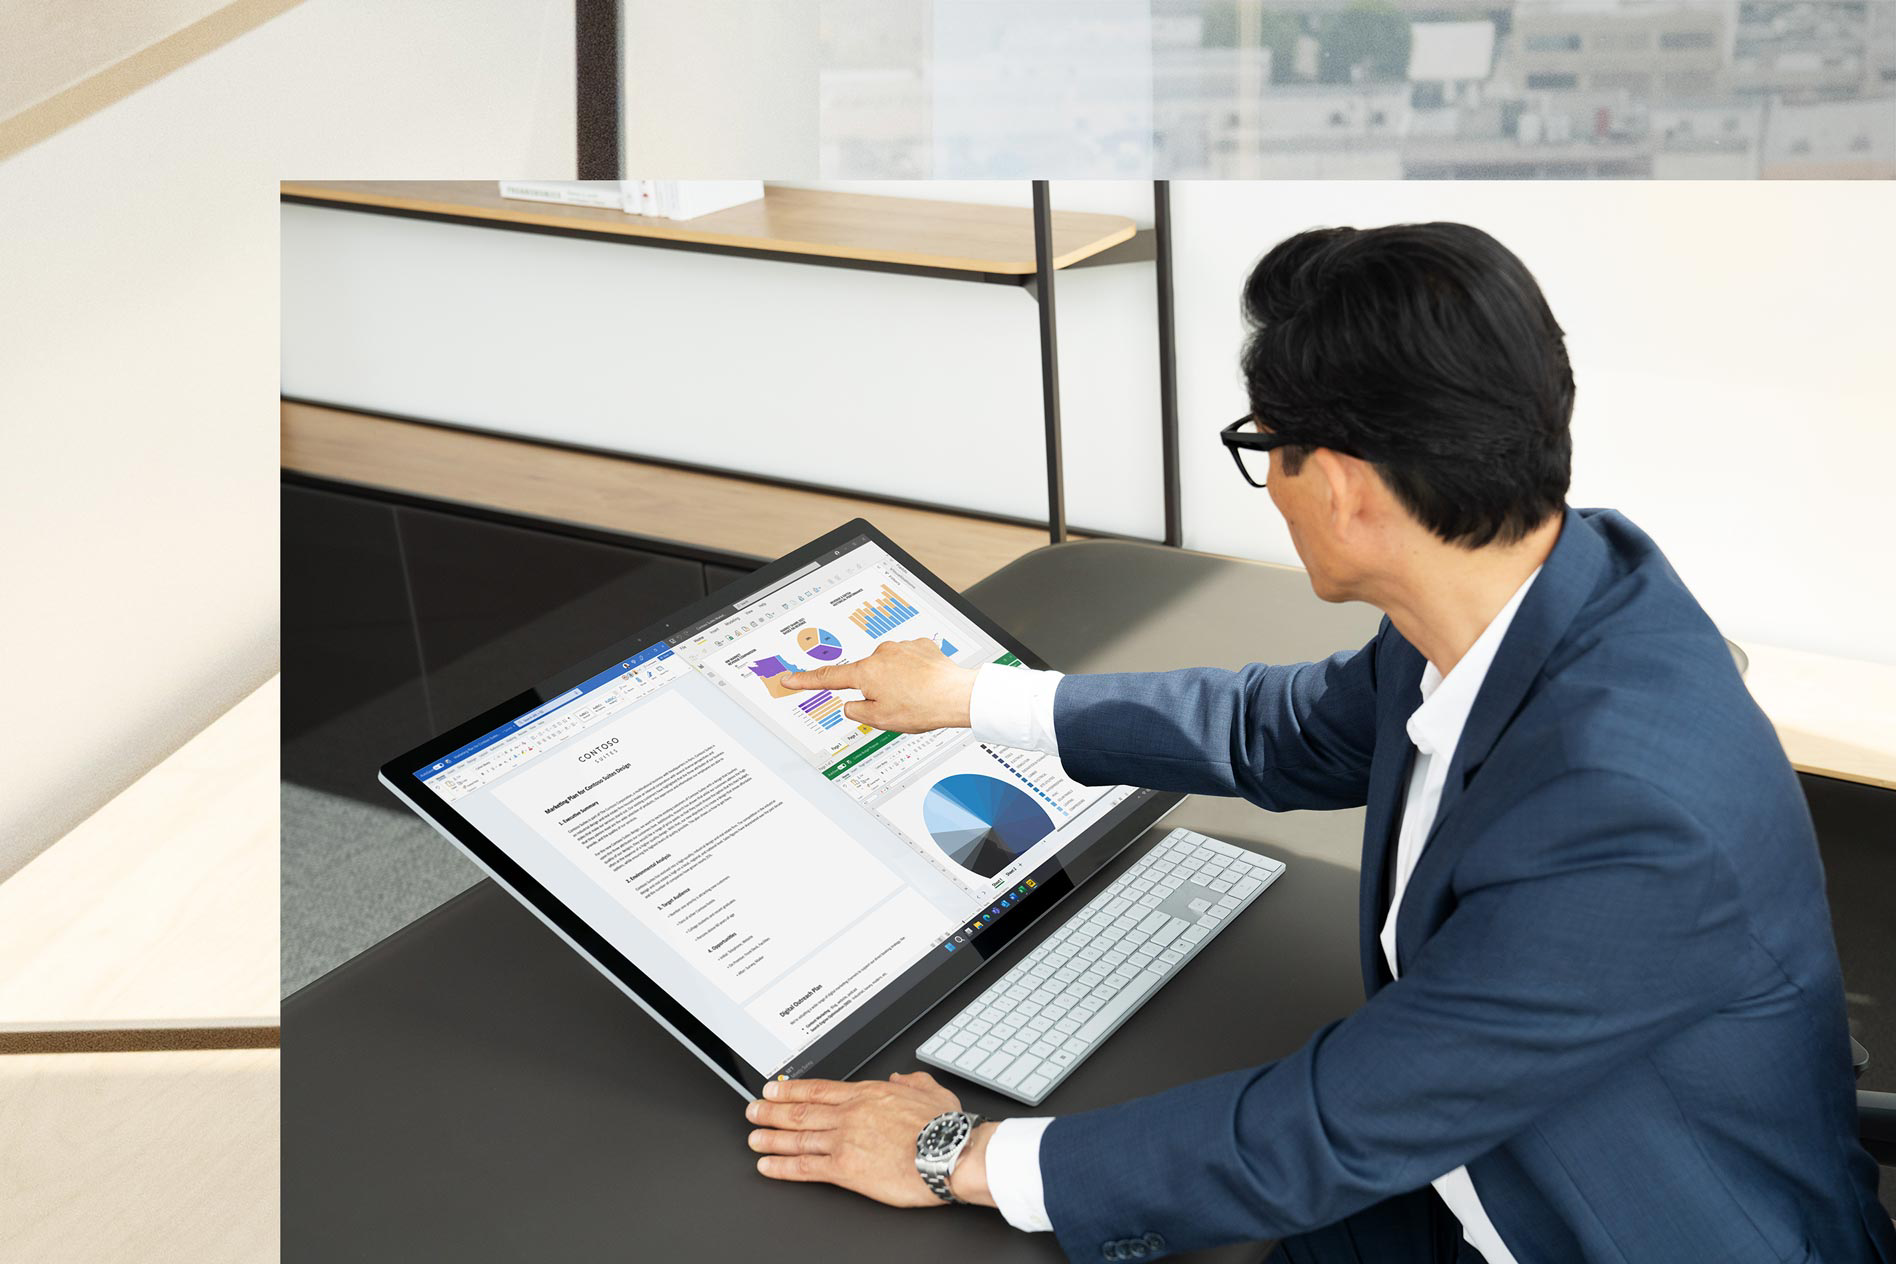 有個男人坐在桌前，觸碰 Surface Studio 2+ 的螢幕進行商務簡報，並且螢幕向後傾斜進入工作室模式。